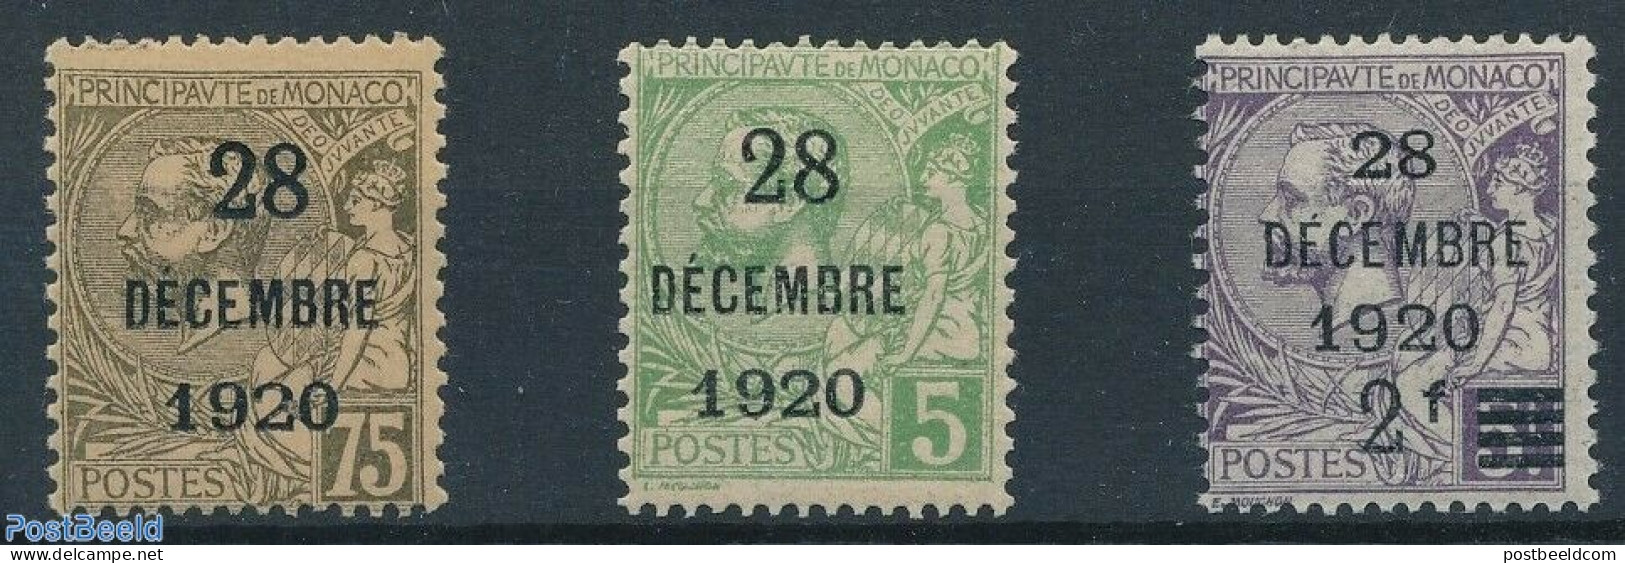 Monaco 1921 28 DEC 1920 Overprints 3v, Unused (hinged) - Nuovi